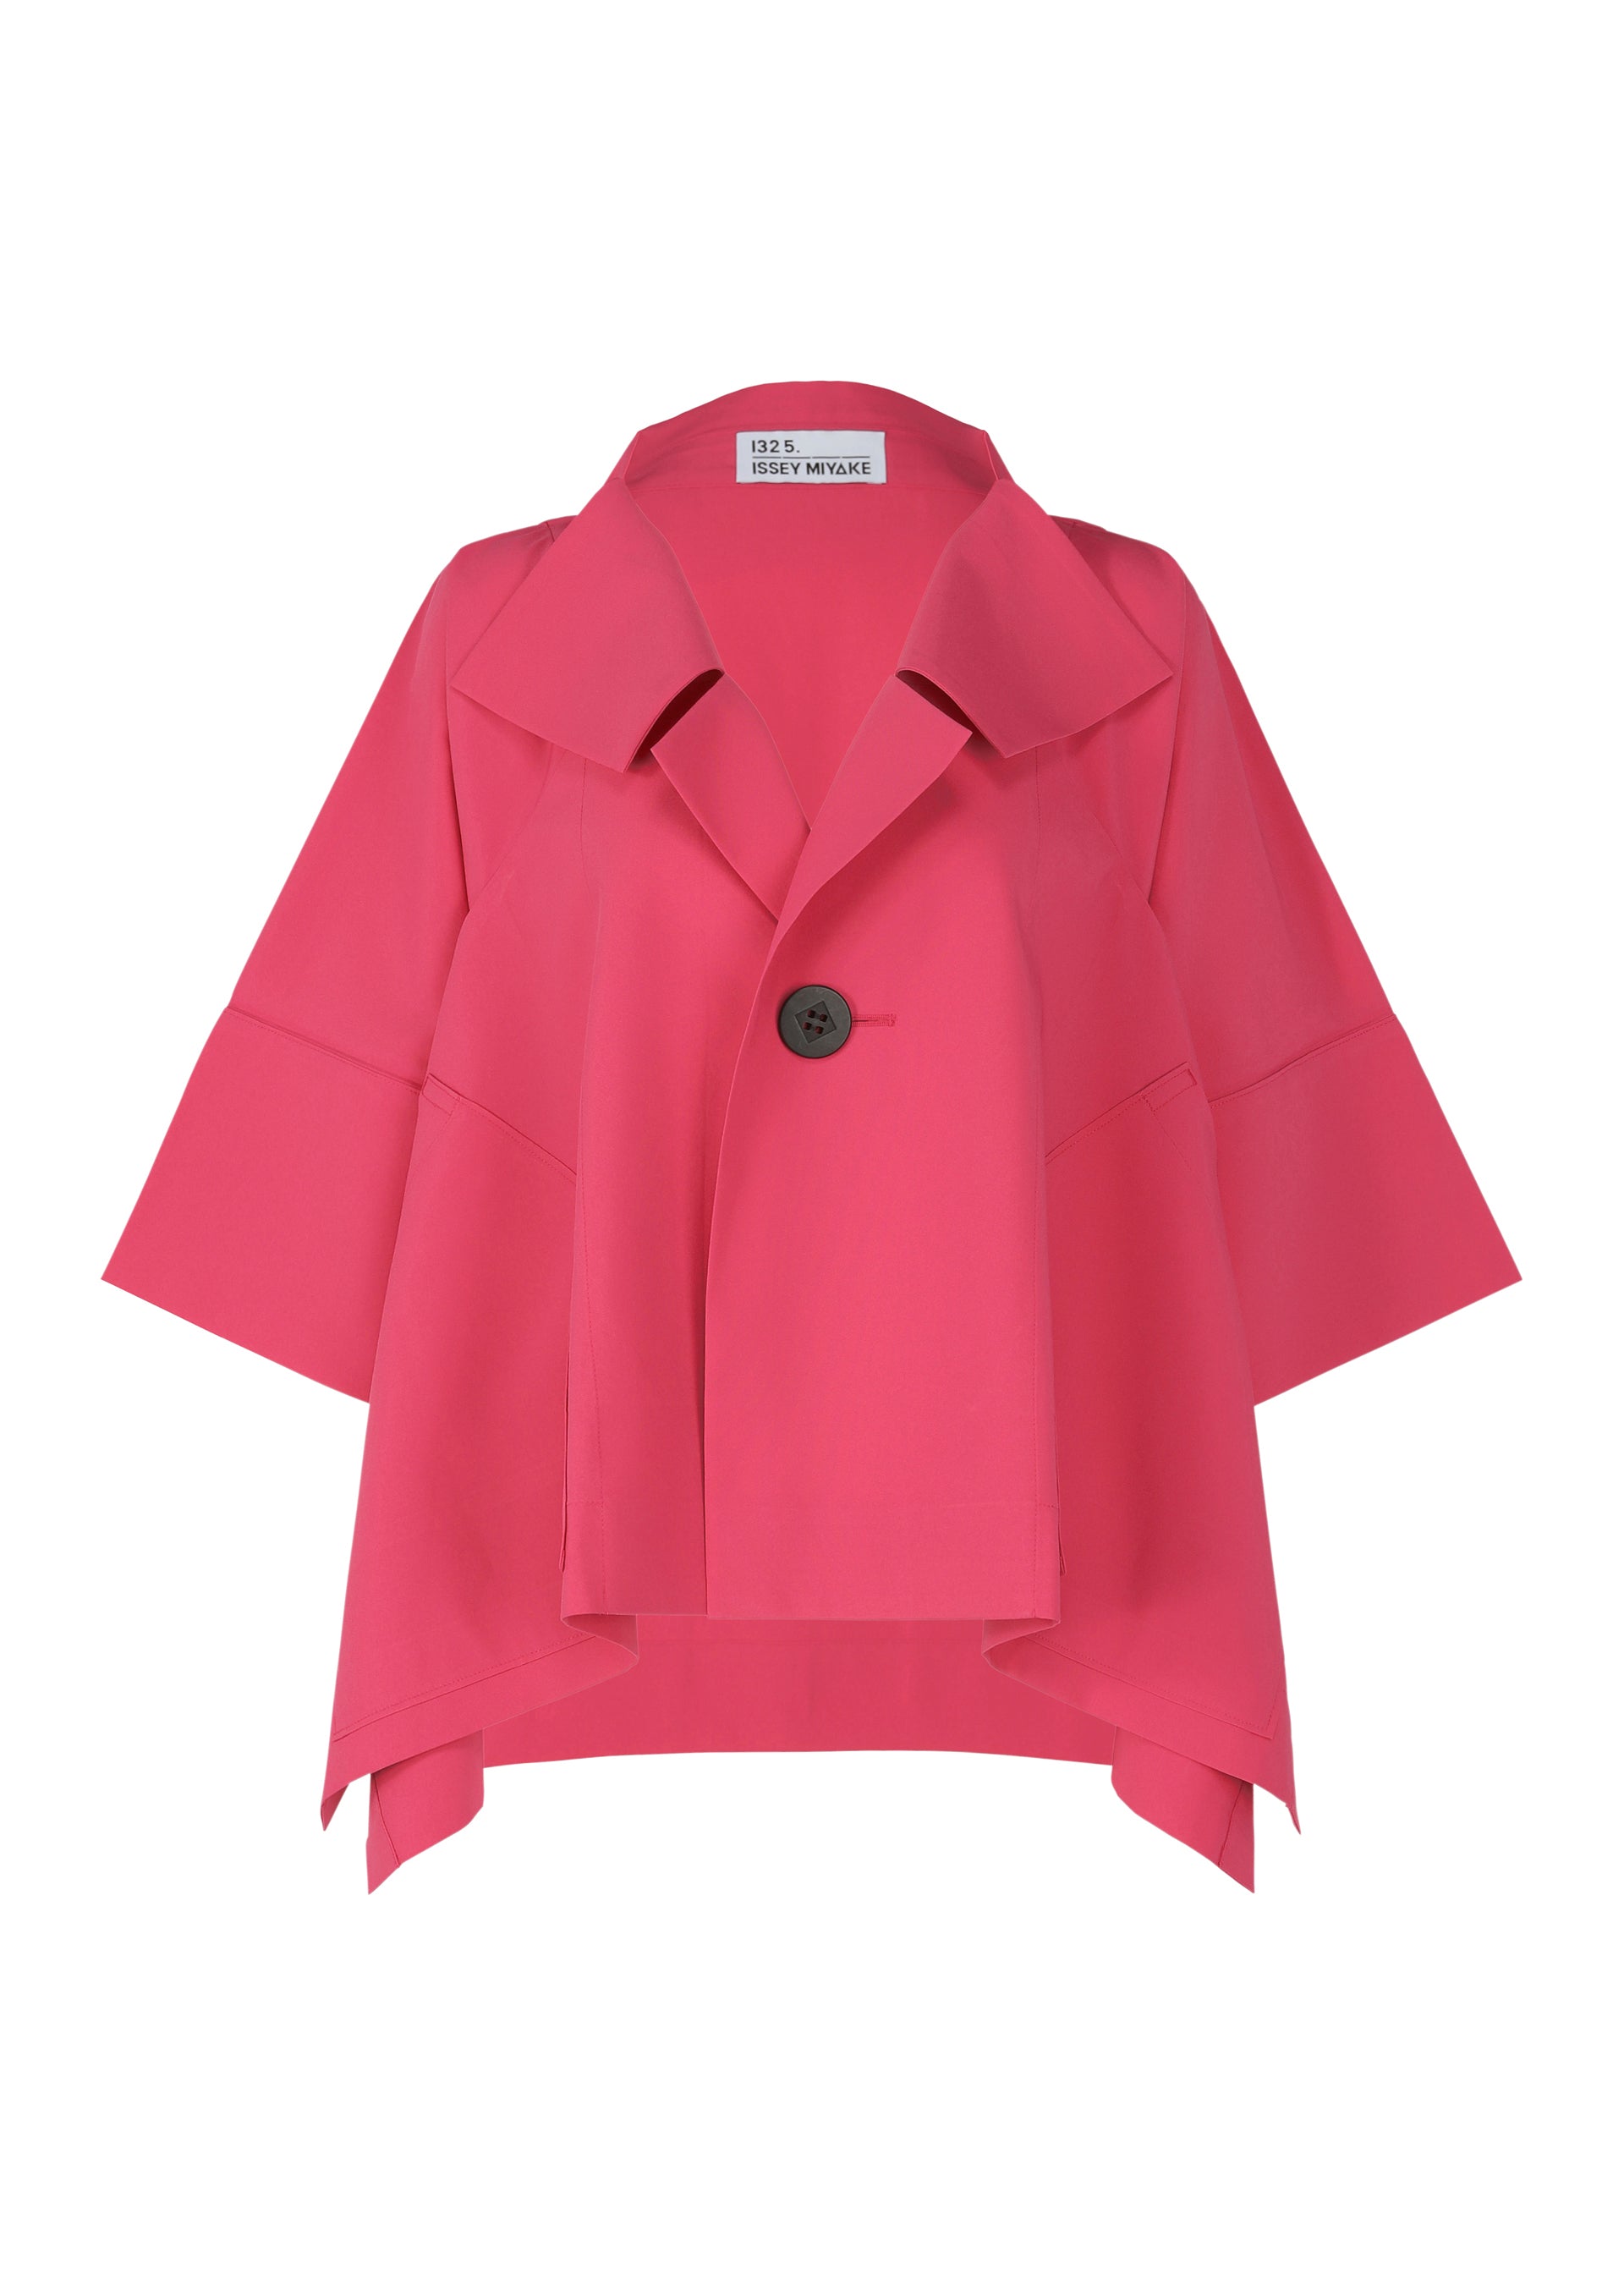 FOLD HOURGLASS Jacket Dark Pink | ISSEY MIYAKE ONLINE STORE UK